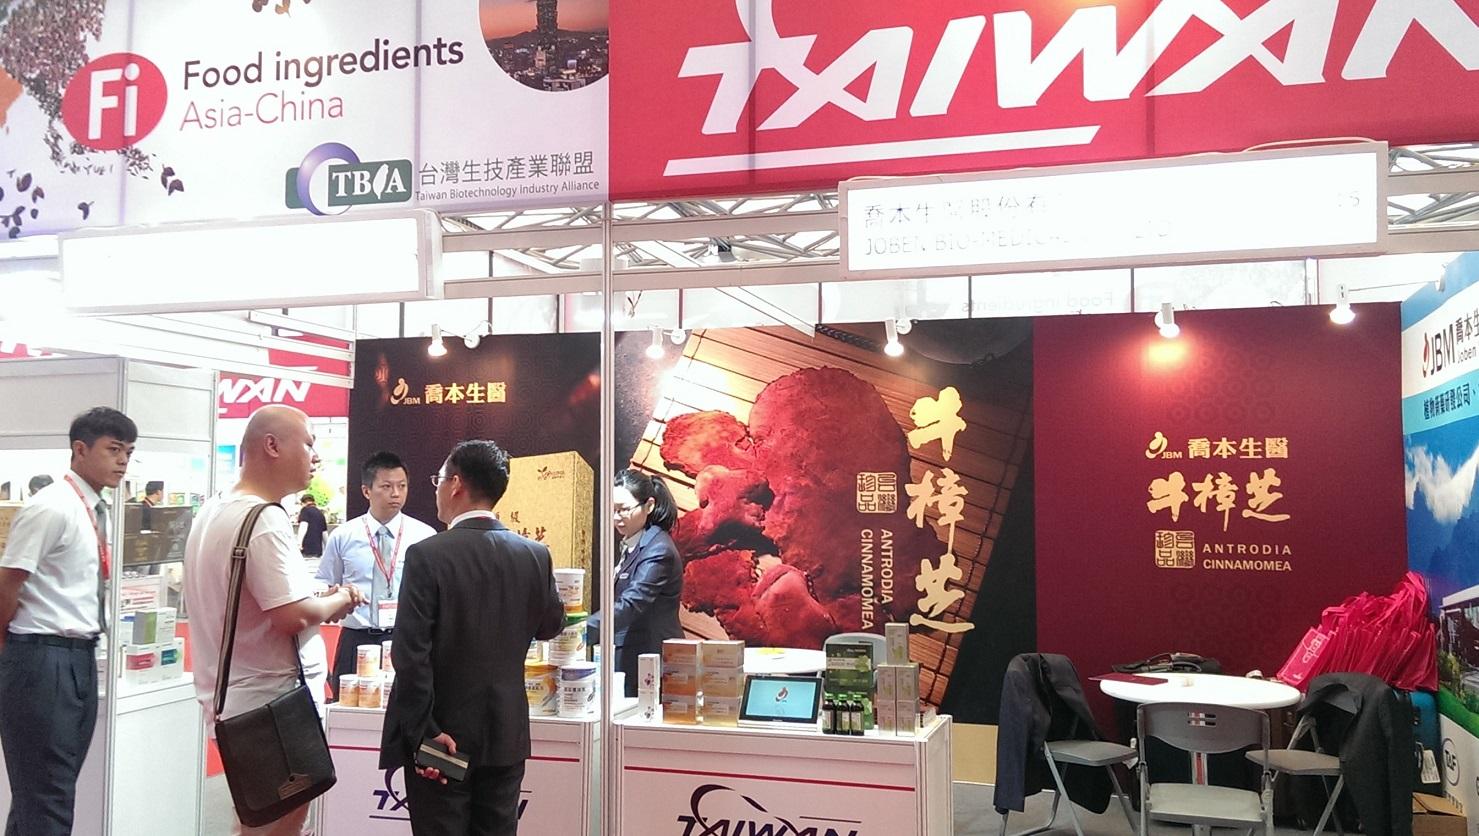 參加2015台灣生技產業聯盟上海FI ASIA-CHINA,HI&NI展覽